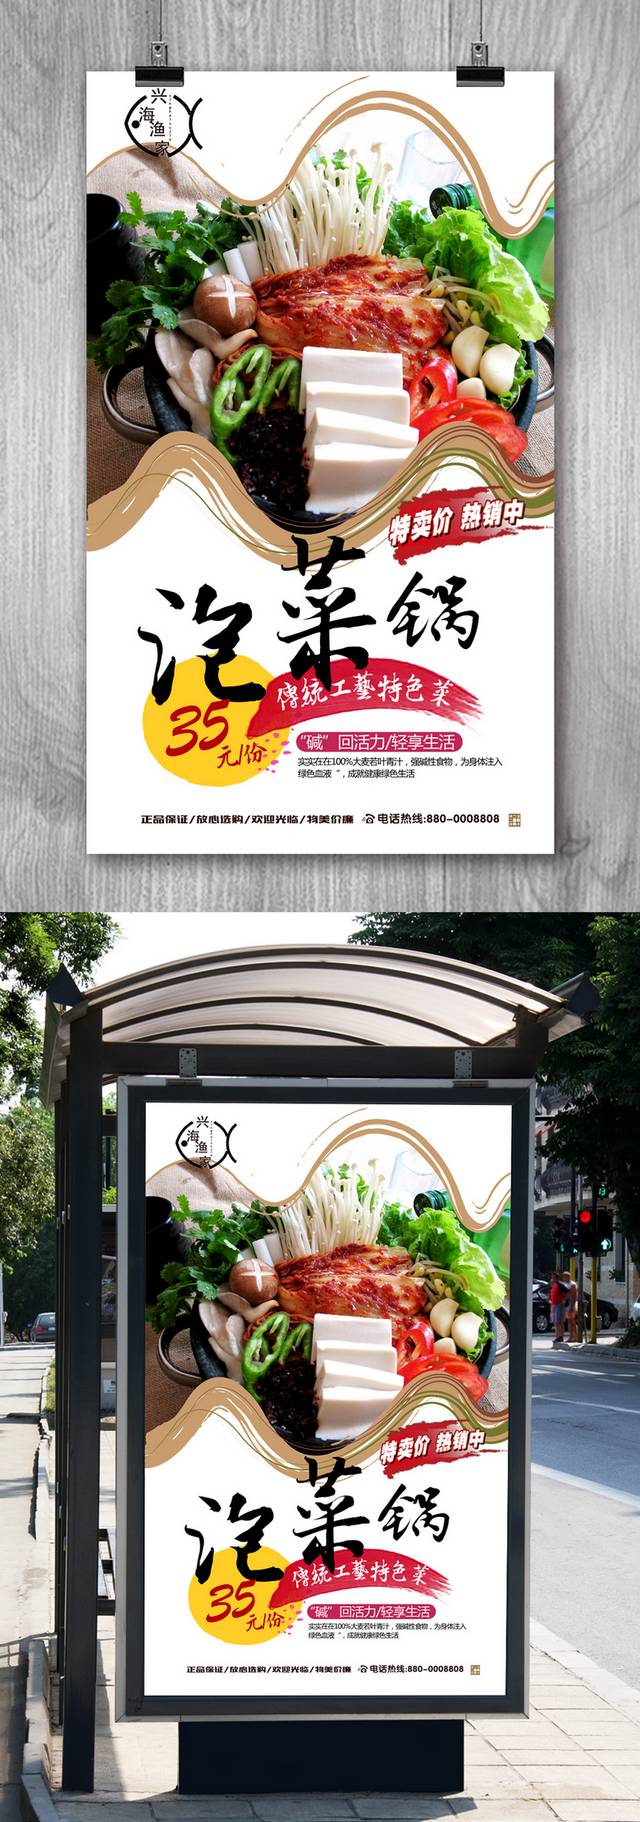 清新高档韩国泡菜锅宣传海报设计